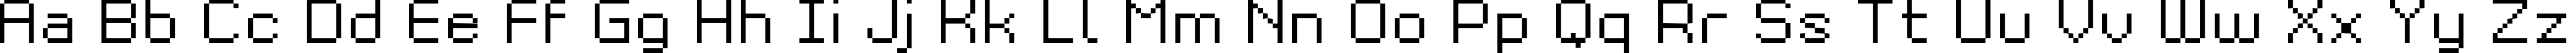 Пример написания английского алфавита шрифтом Grixel Kyrou 9 Regular Xtnd